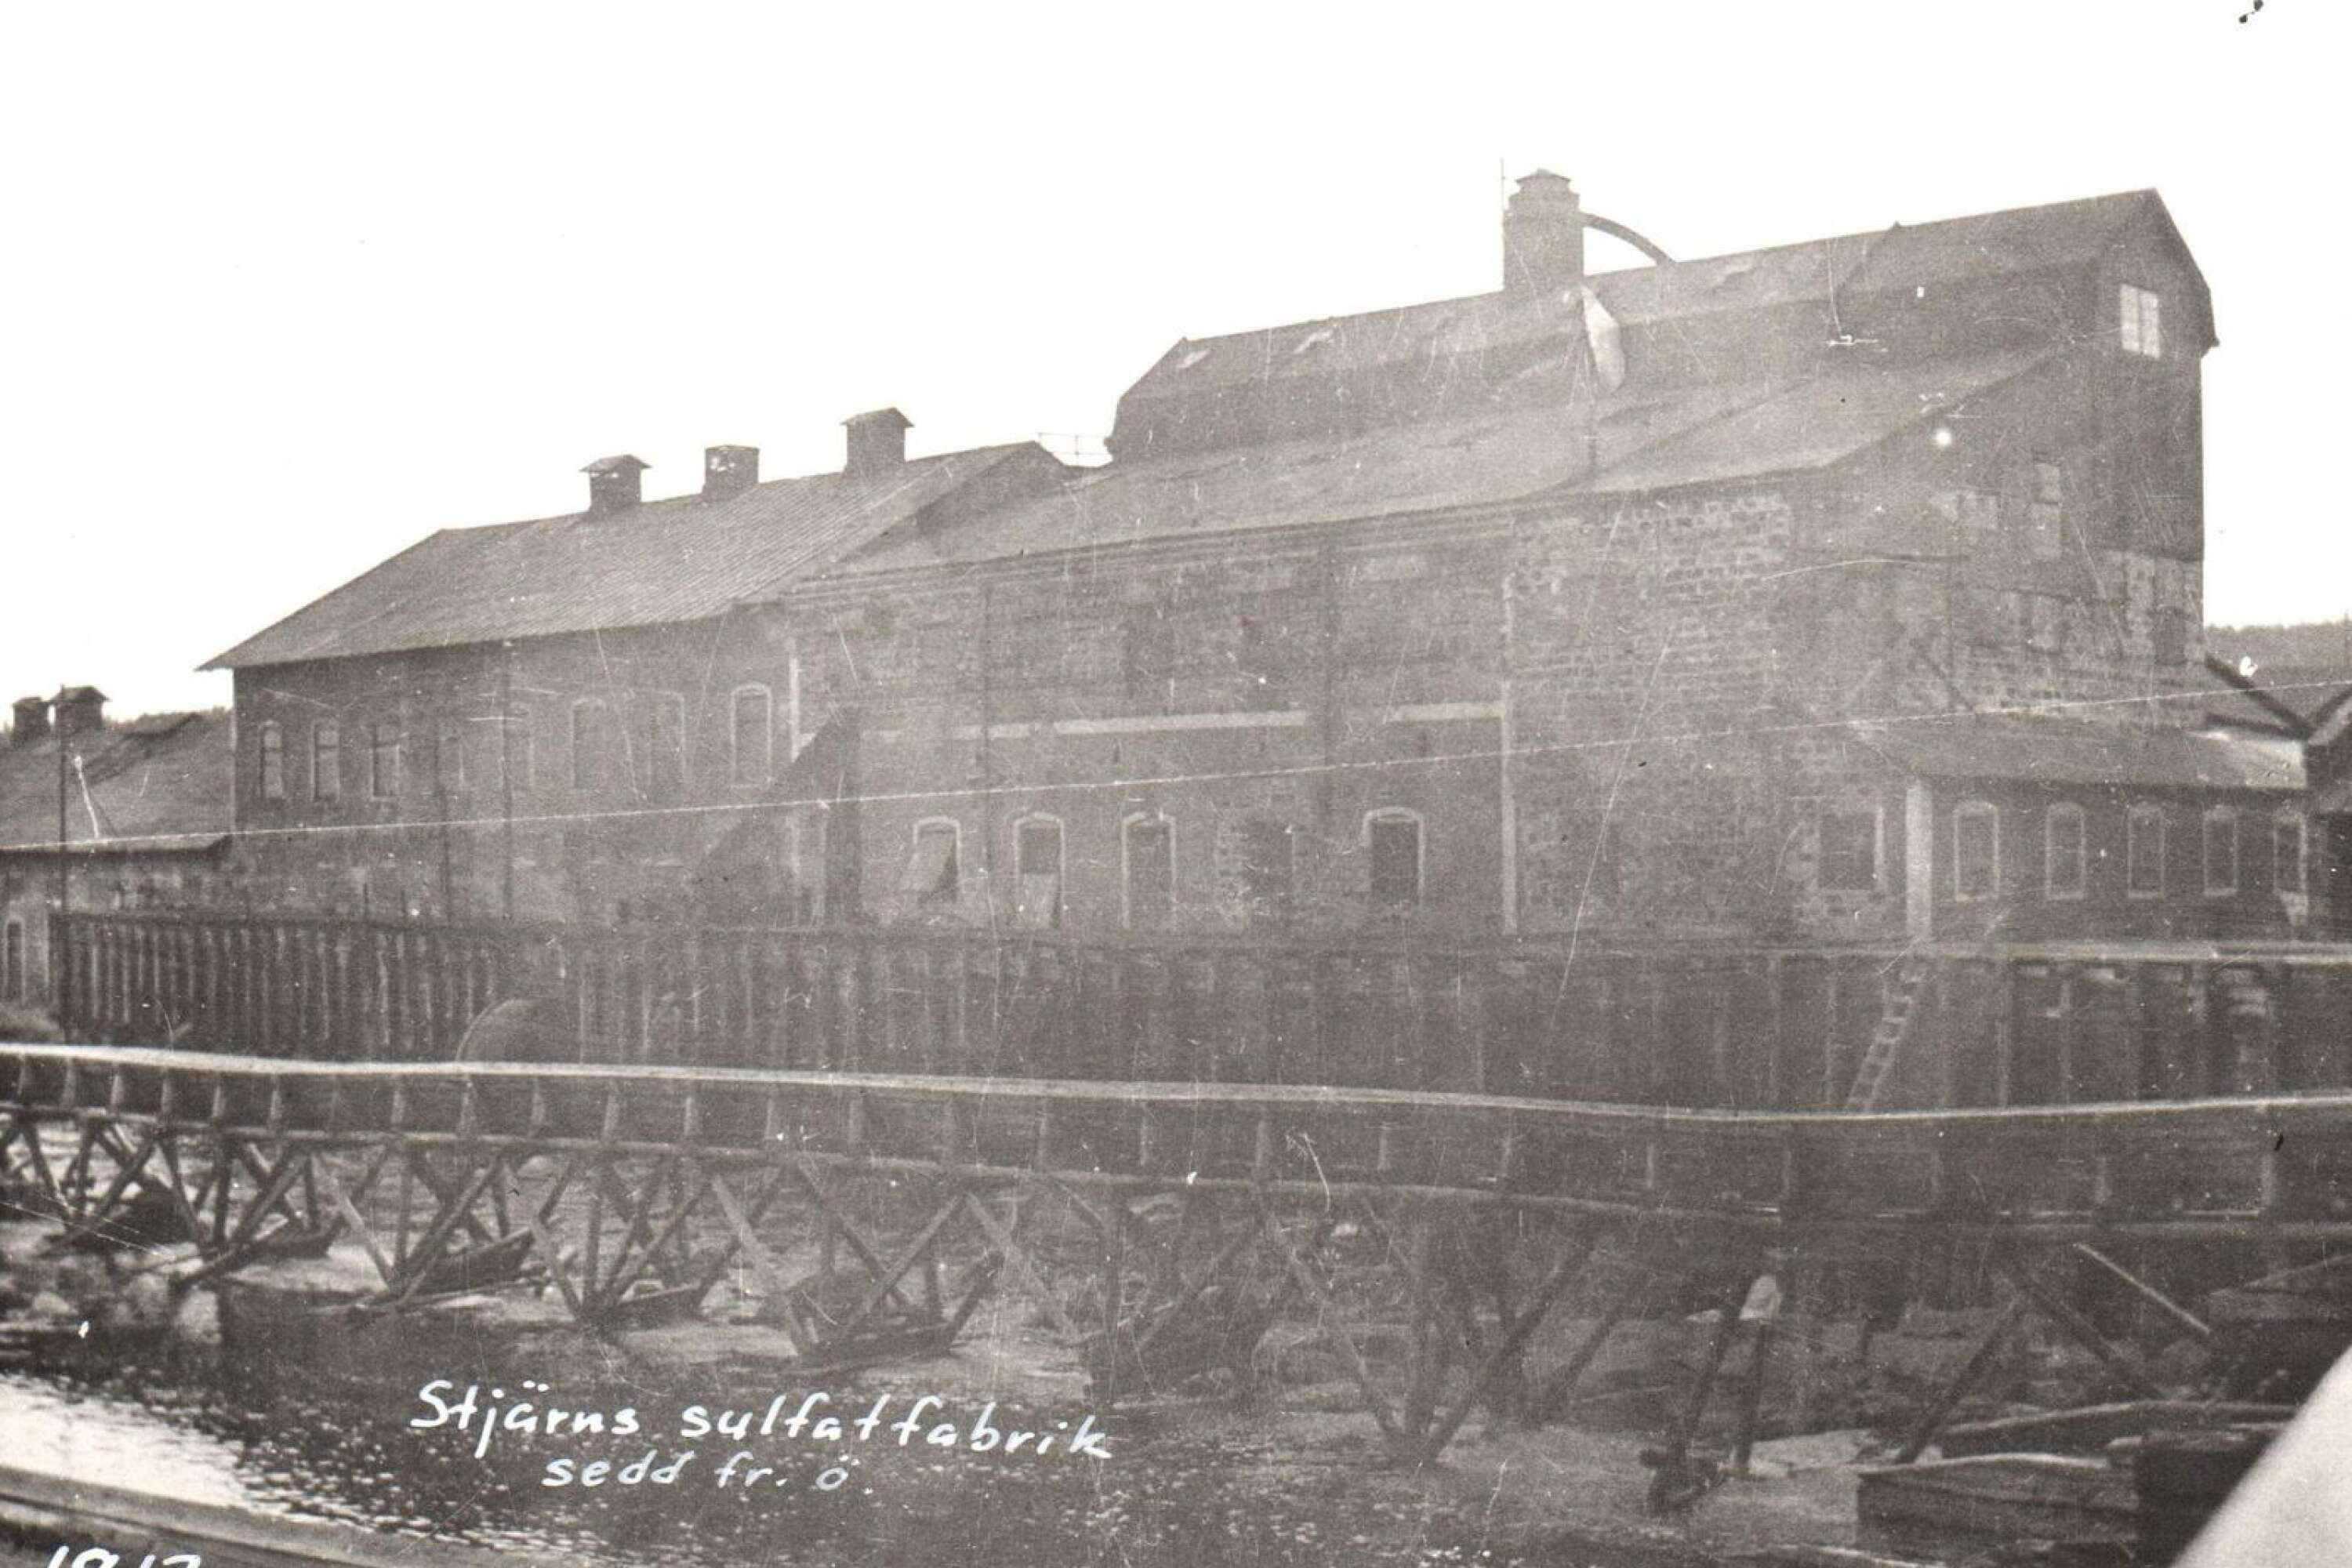 Sulfatfabriken flyttades från Stjärnfors till Skoghall 1917.